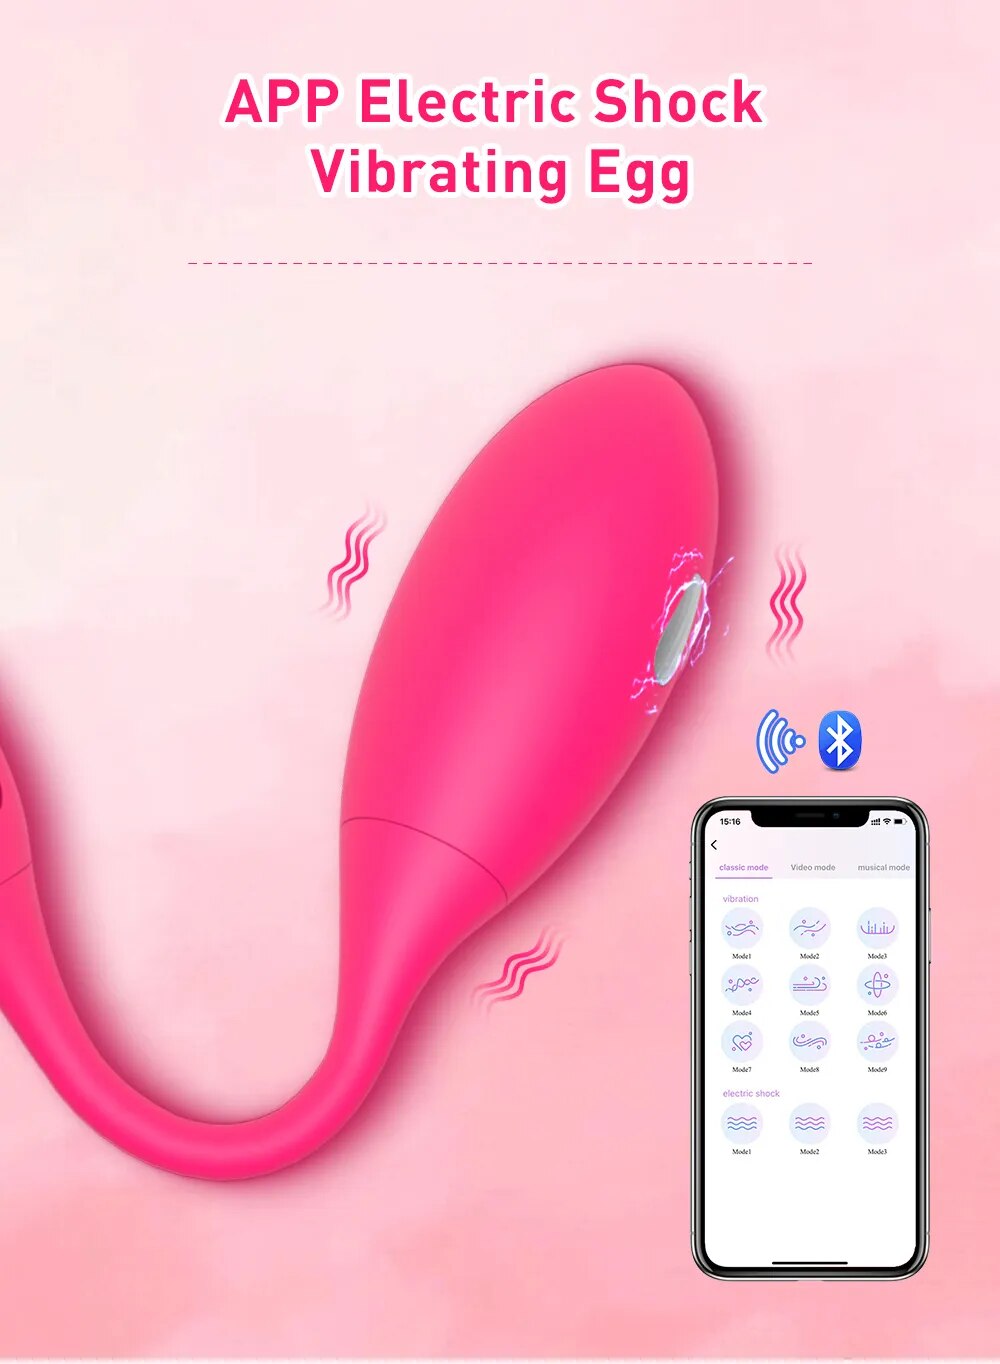 Đại lý Trứng rung sốc điện Levett điều khiển từ xa qua app bluetooth giá sỉ